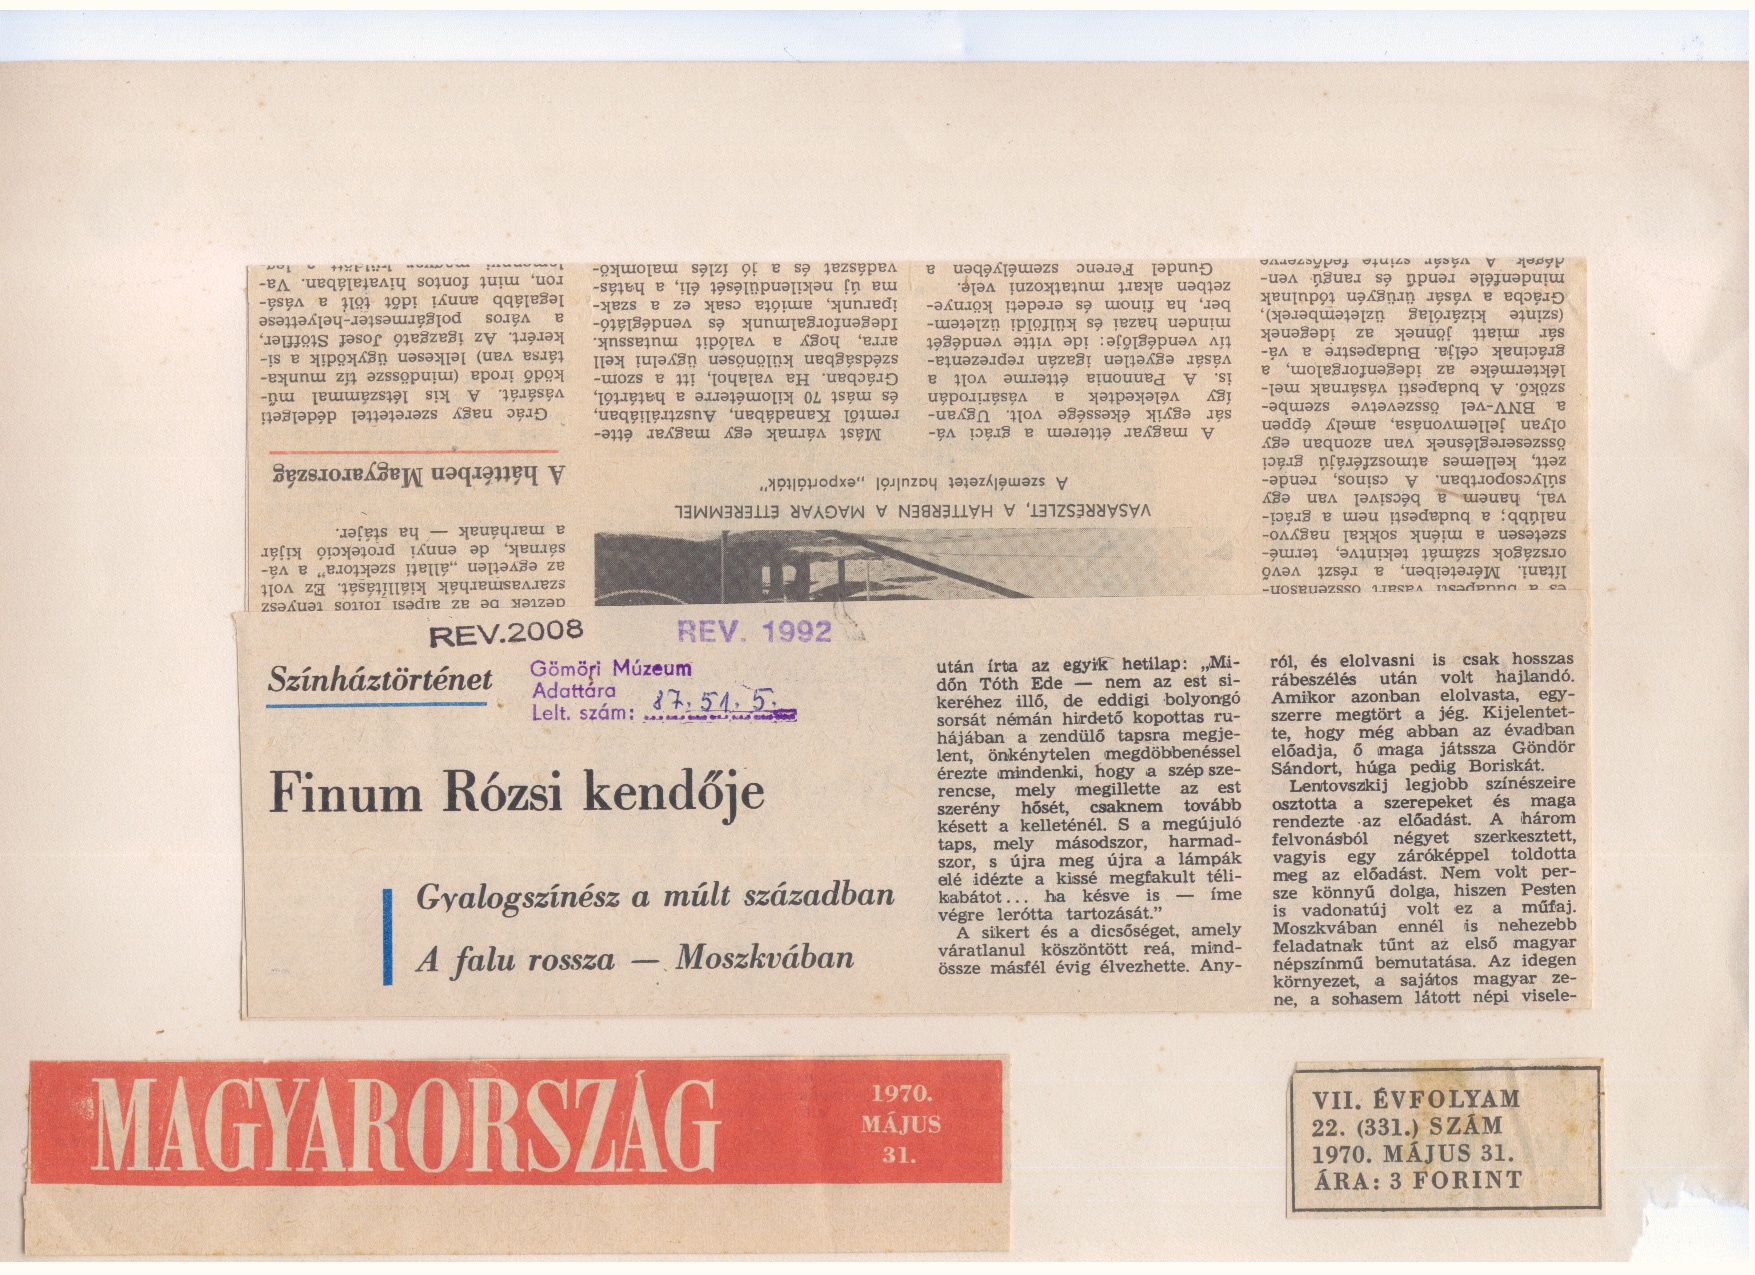 Tóth Ede dokumentumok,lapkivágás /Magyarország 1970.máj.31./ (Gömöri Múzeum, Putnok CC BY-NC-SA)